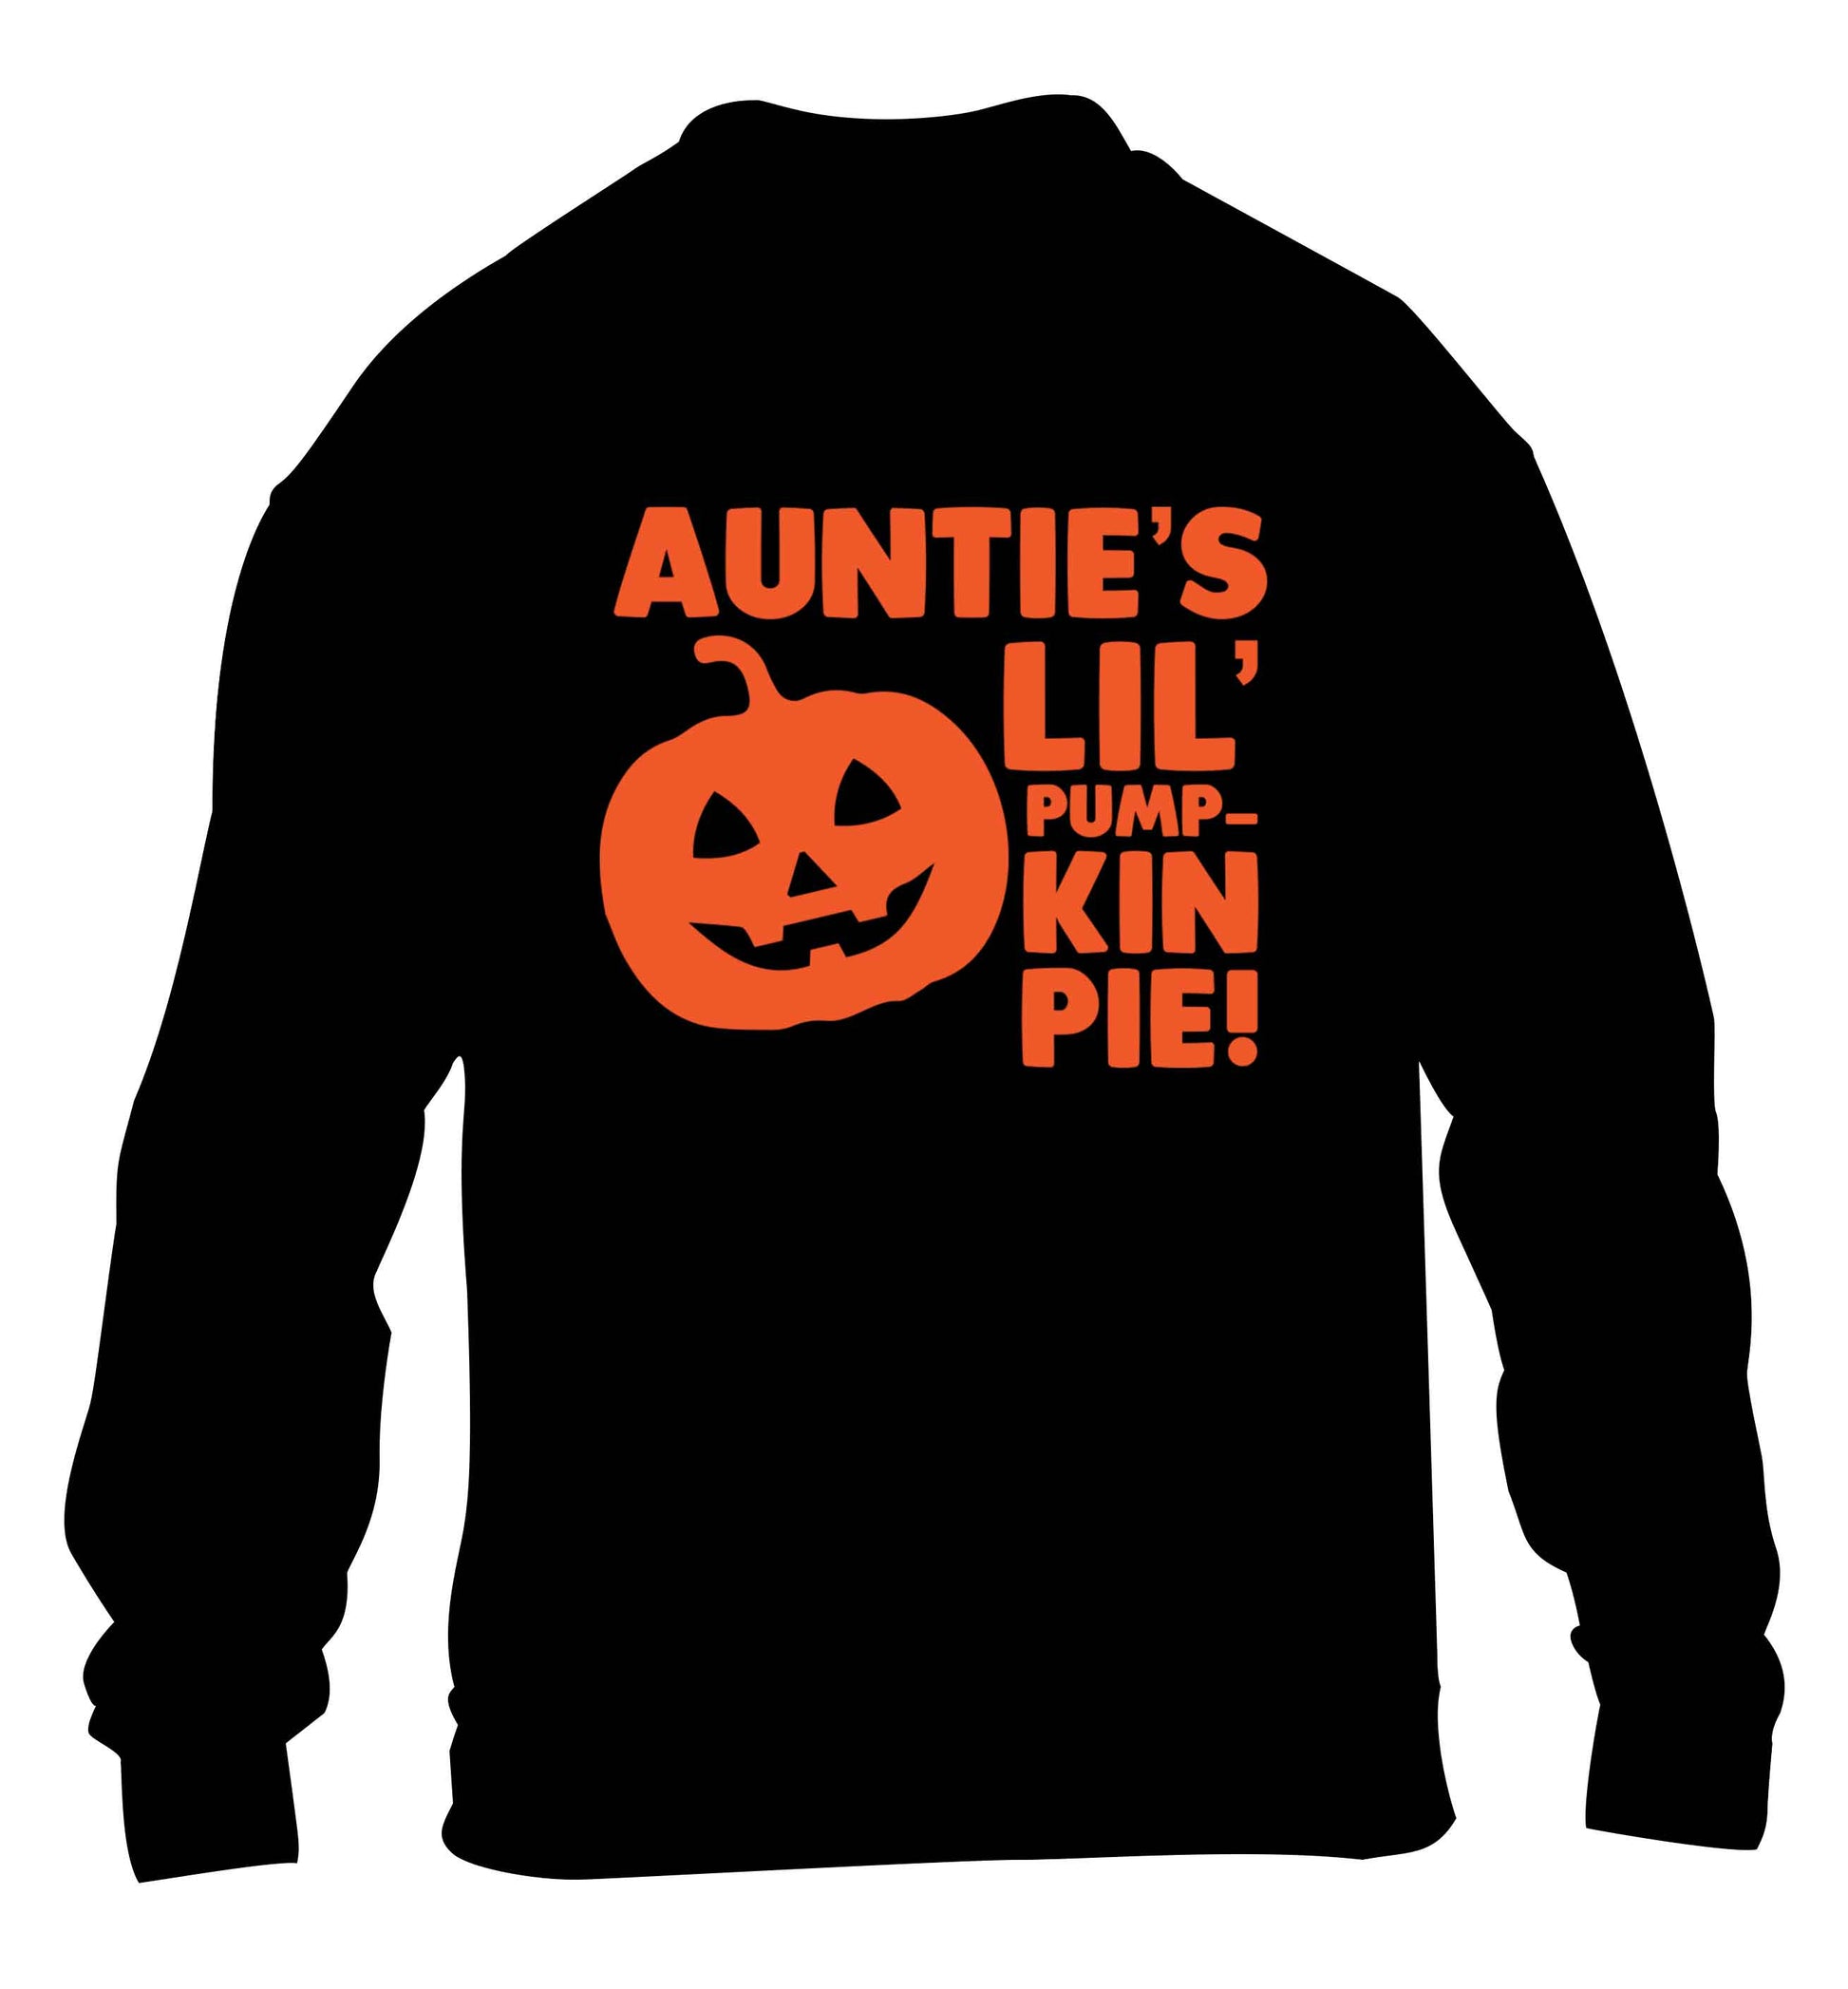 Auntie's lil' pumpkin pie children's black sweater 12-13 Years